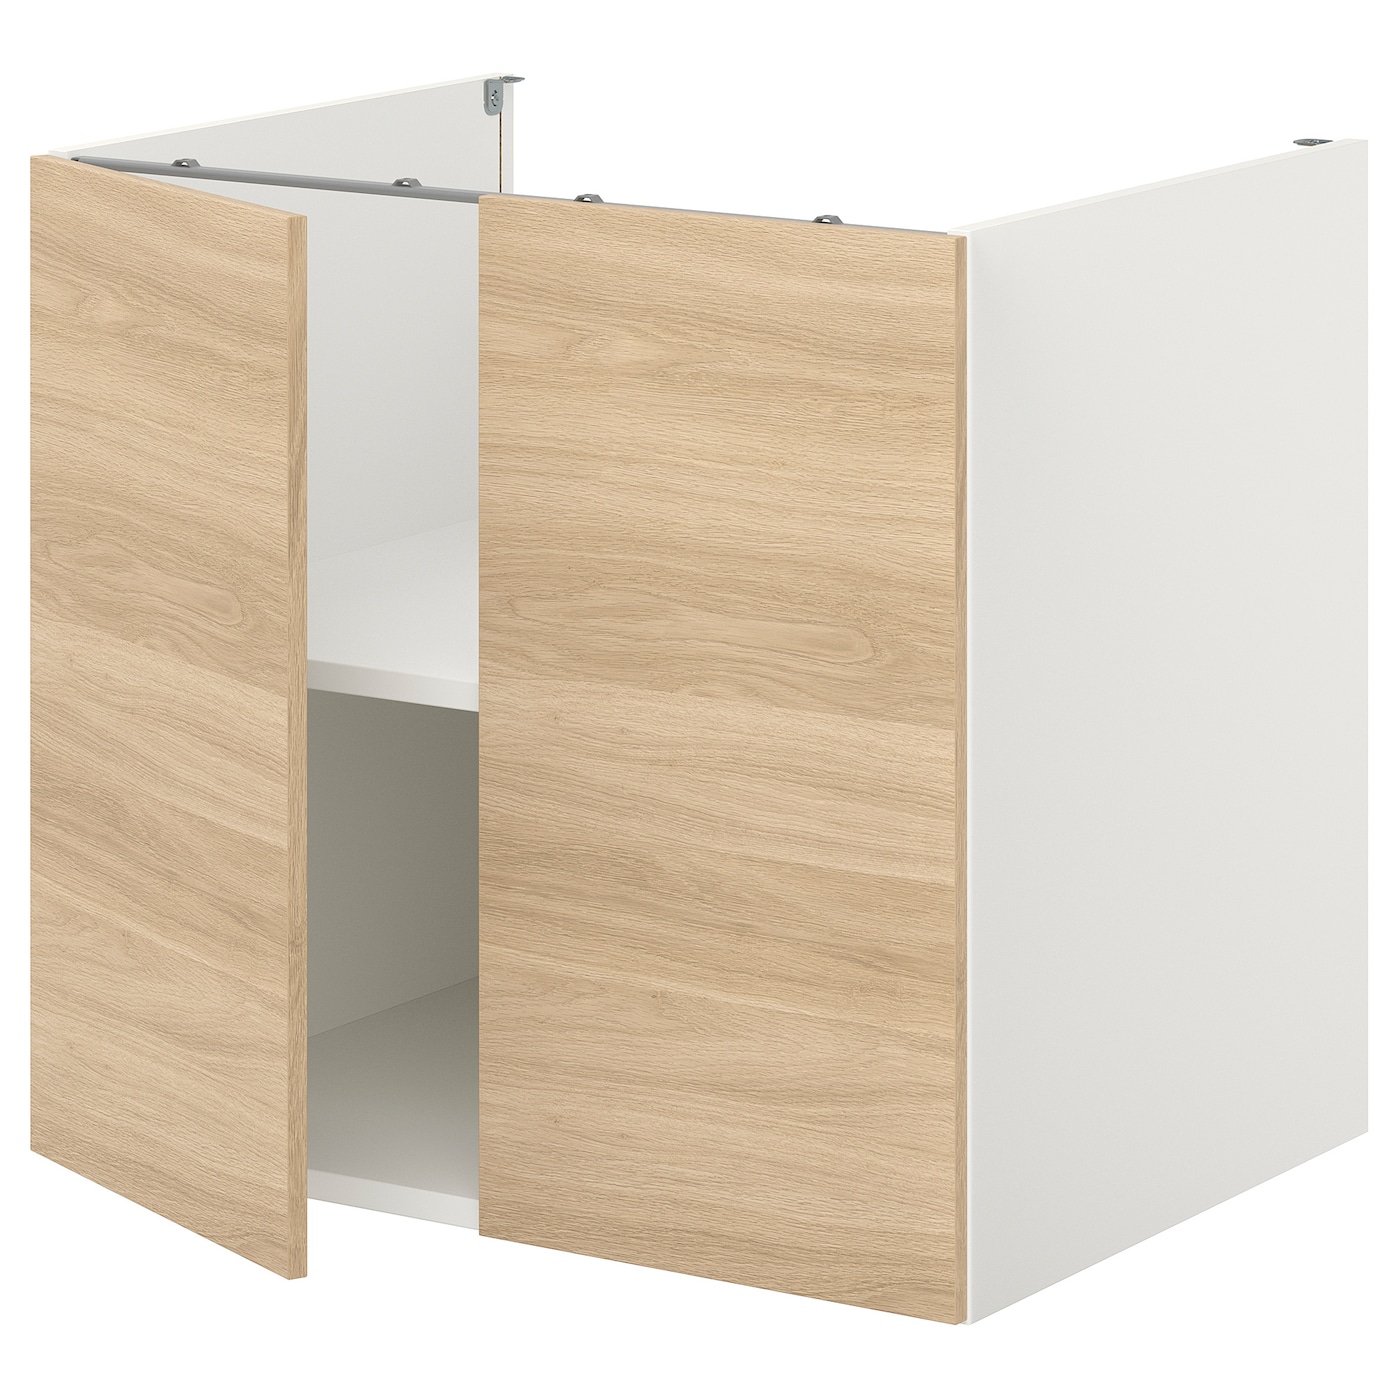 Напольный шкаф с ящиками - IKEA ENHET, 75x62x80см, белый/светло-коричневый, ЭХНЕТ ИКЕА